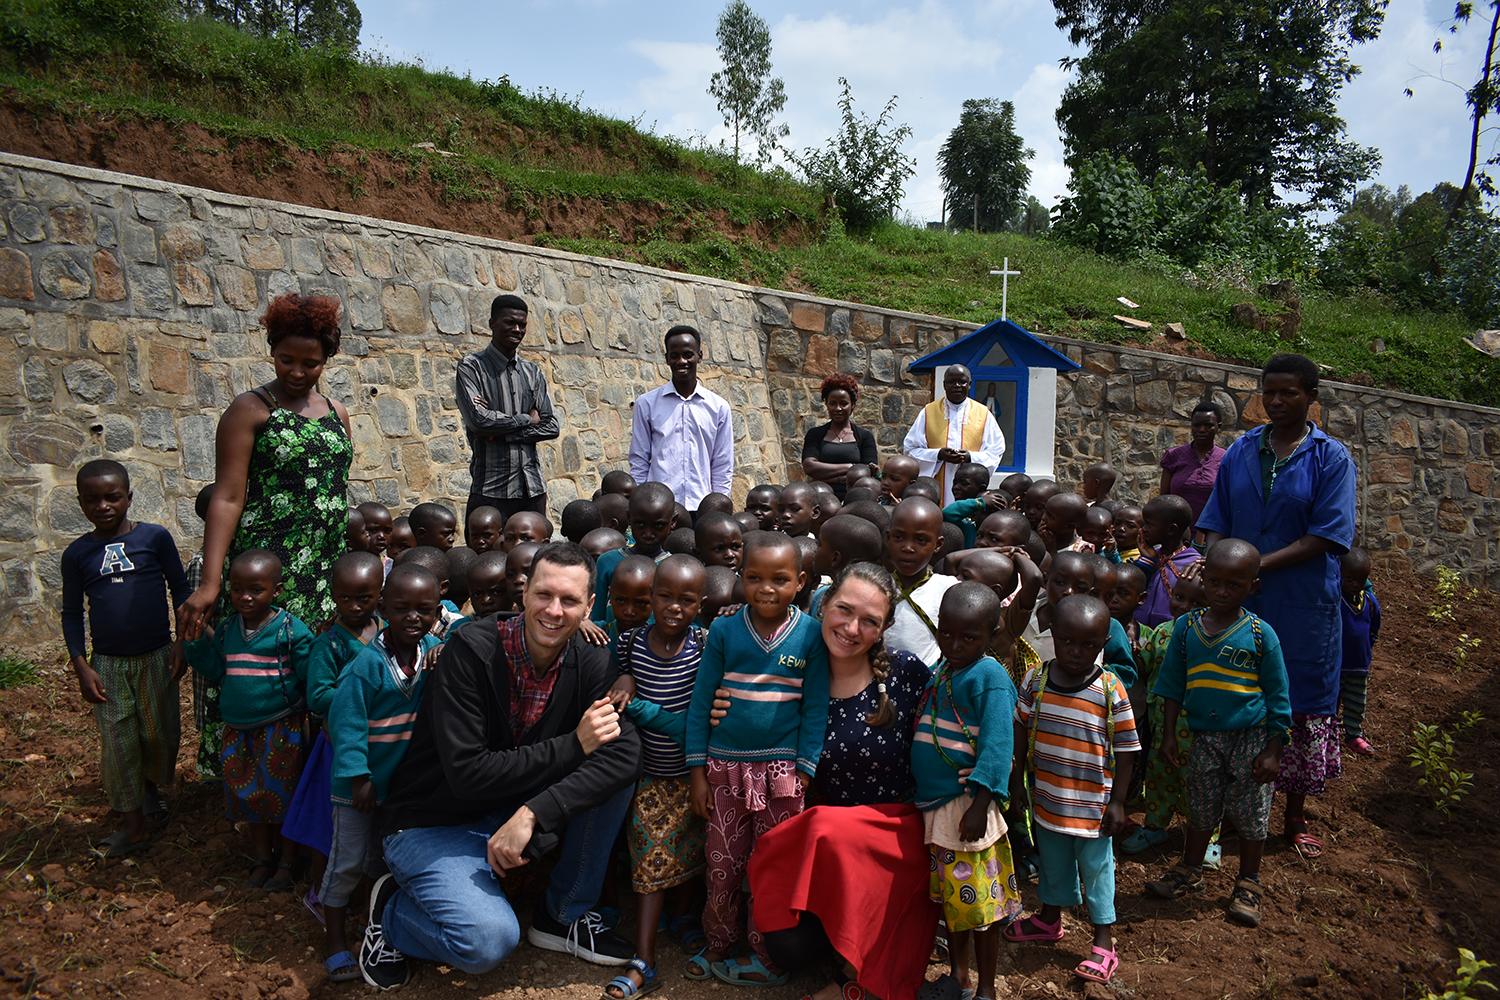 Pol roka venoval deťom v Rwande: Vo svätej zemi som našiel aj pokoru